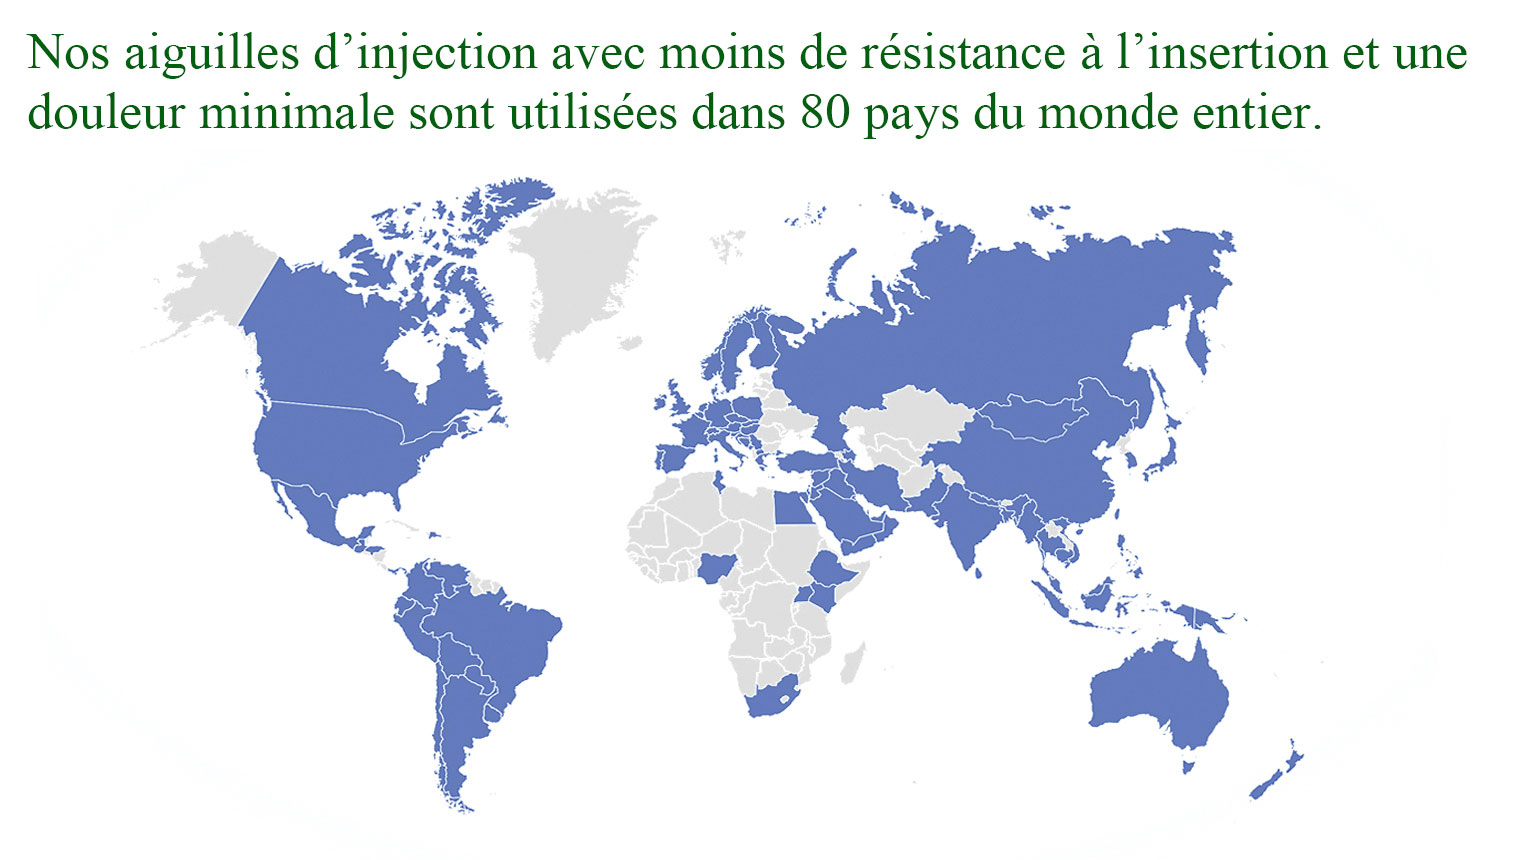 Nos aiguilles d’injection avec moins de résistance à l’insertion et une douleur minimale sont utilisées dans 80 pays du monde entier.